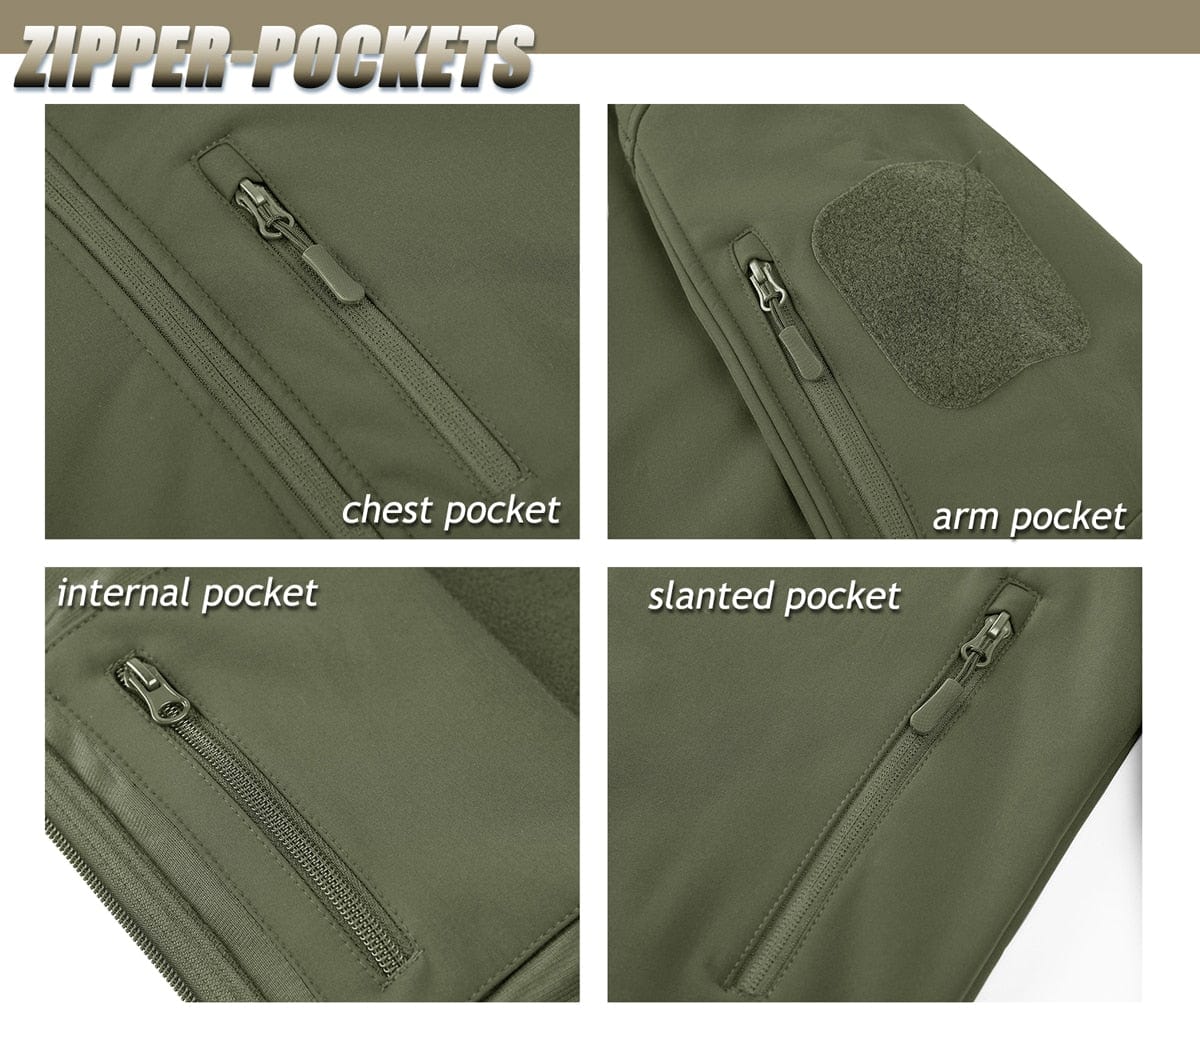 Waterproof Exterior Fleece Interior Jacket Outdoor Shirts & Tops BushLine   